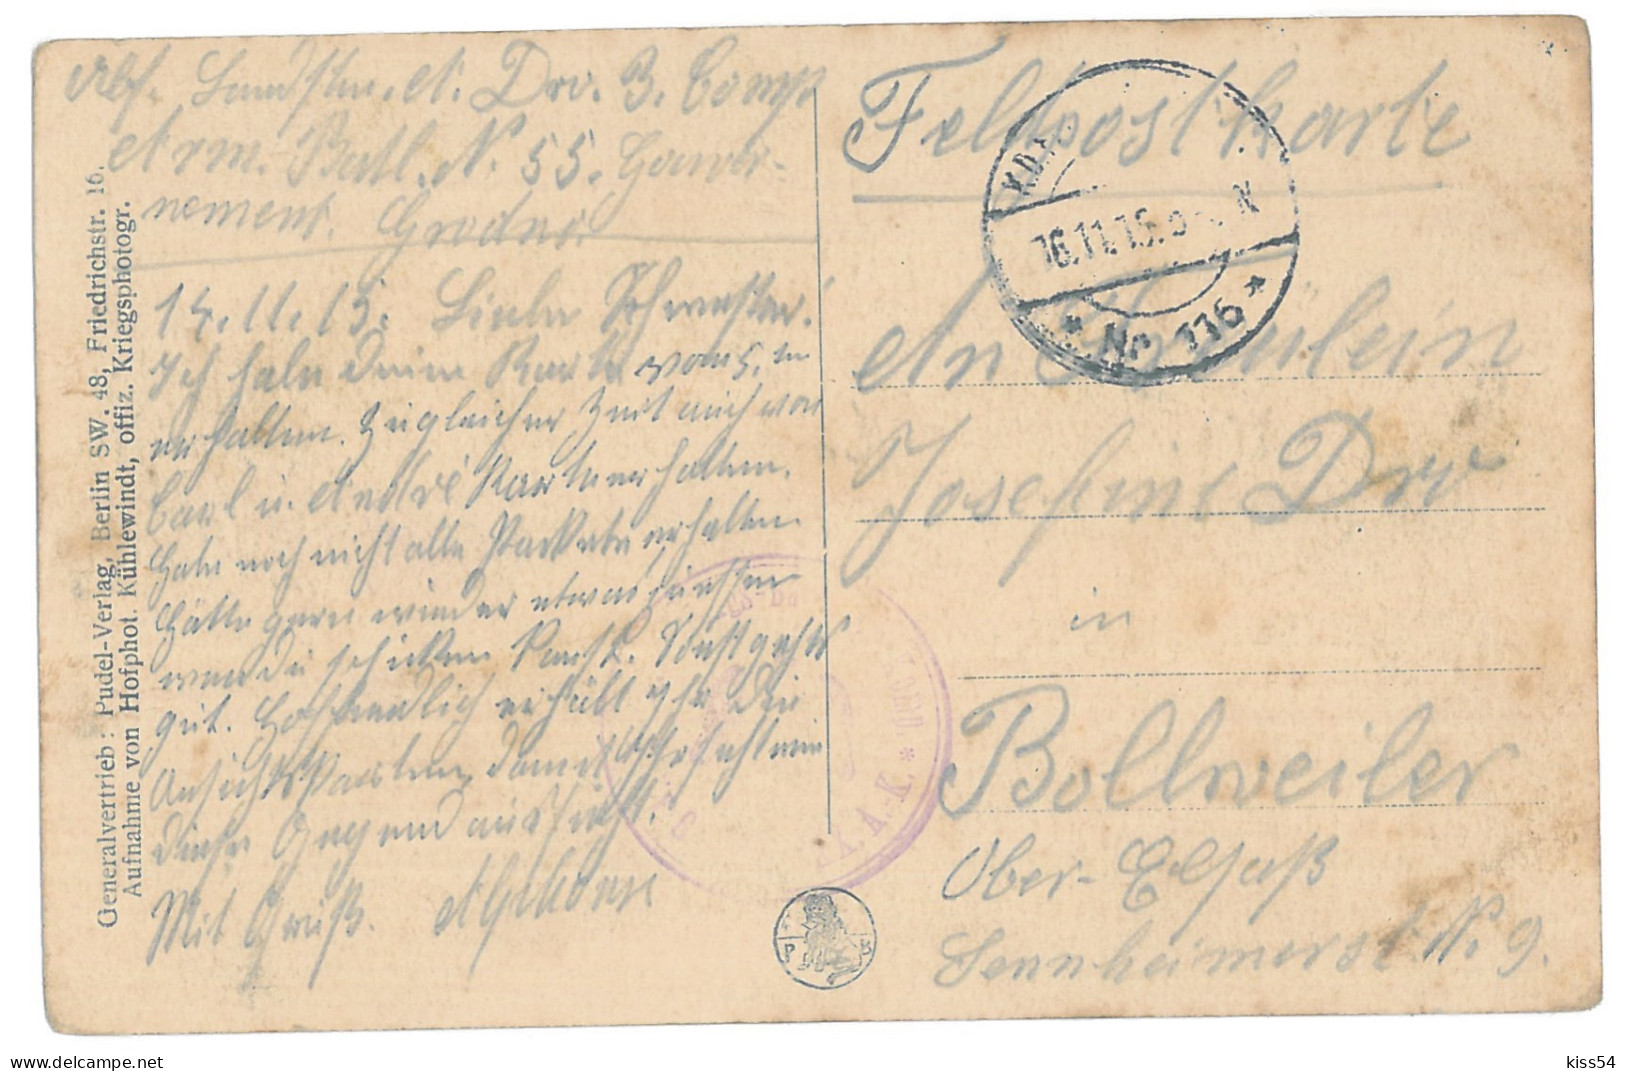 BL 28 - 14633 GRODNO, Railway Station, Bombed, Belarus - Old Postcard, CENSOR - Used - 1915 - Wit-Rusland